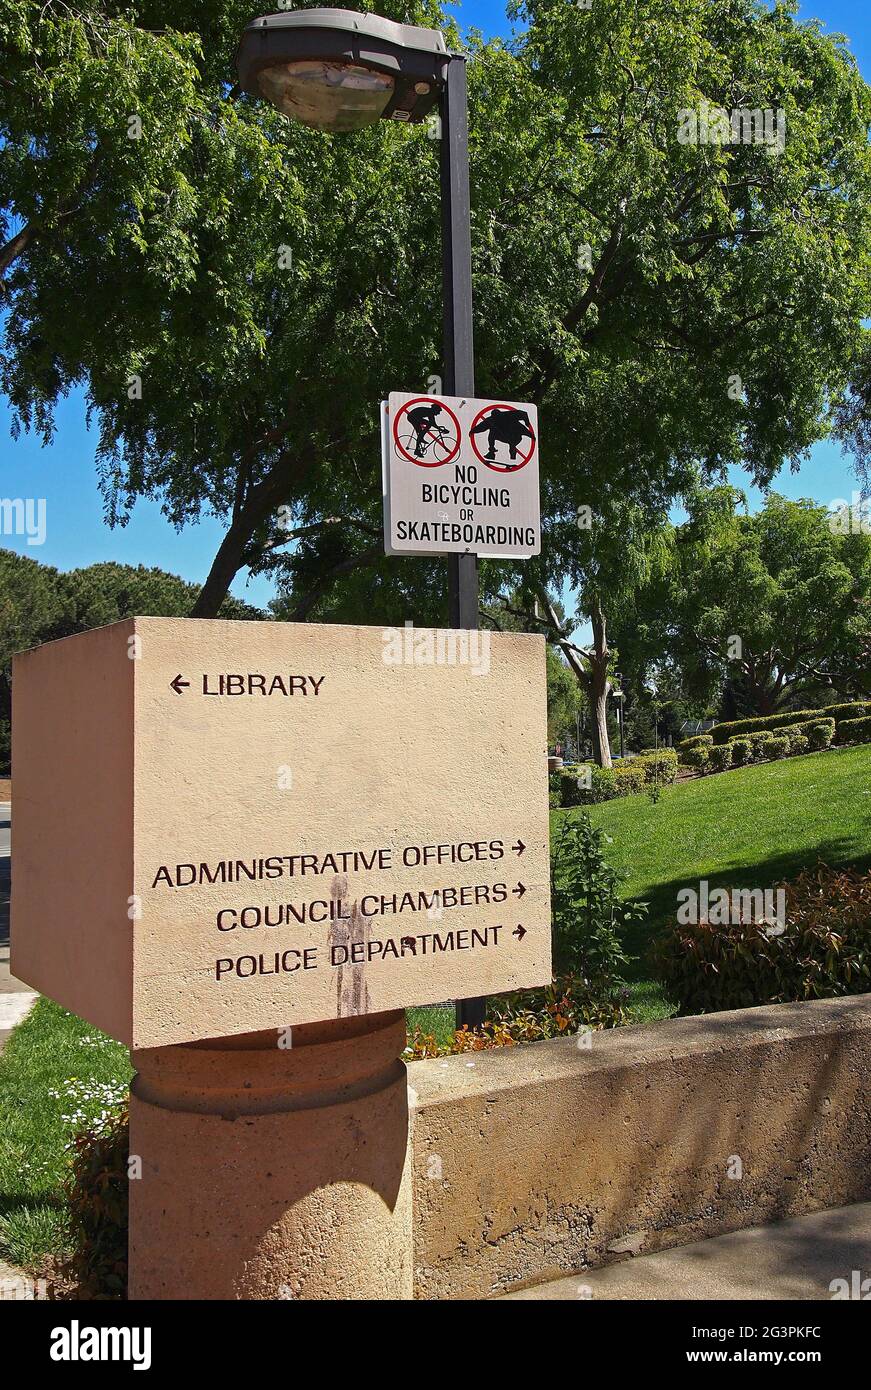 Union City indicazioni per la biblioteca, gli uffici amministrativi, le camere del consiglio, il dipartimento di polizia e nessun segno di skateboard o bicicletta, California Foto Stock